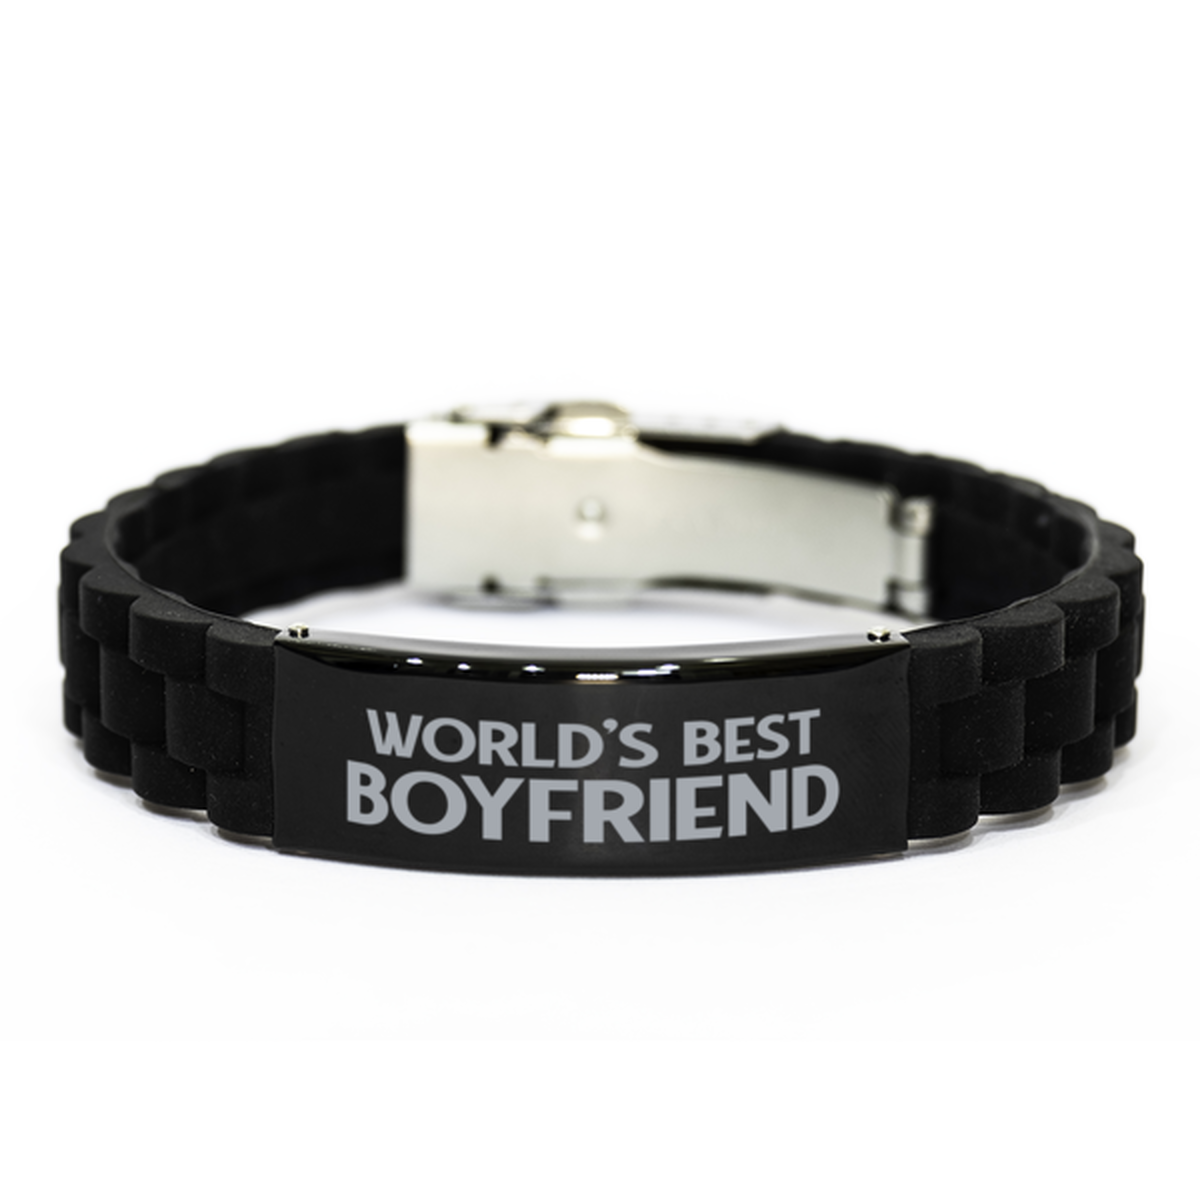 World's Best Boyfriend Gifts, Funny Black Engraved Bracelet For Boyfriend, Family Gifts For Men